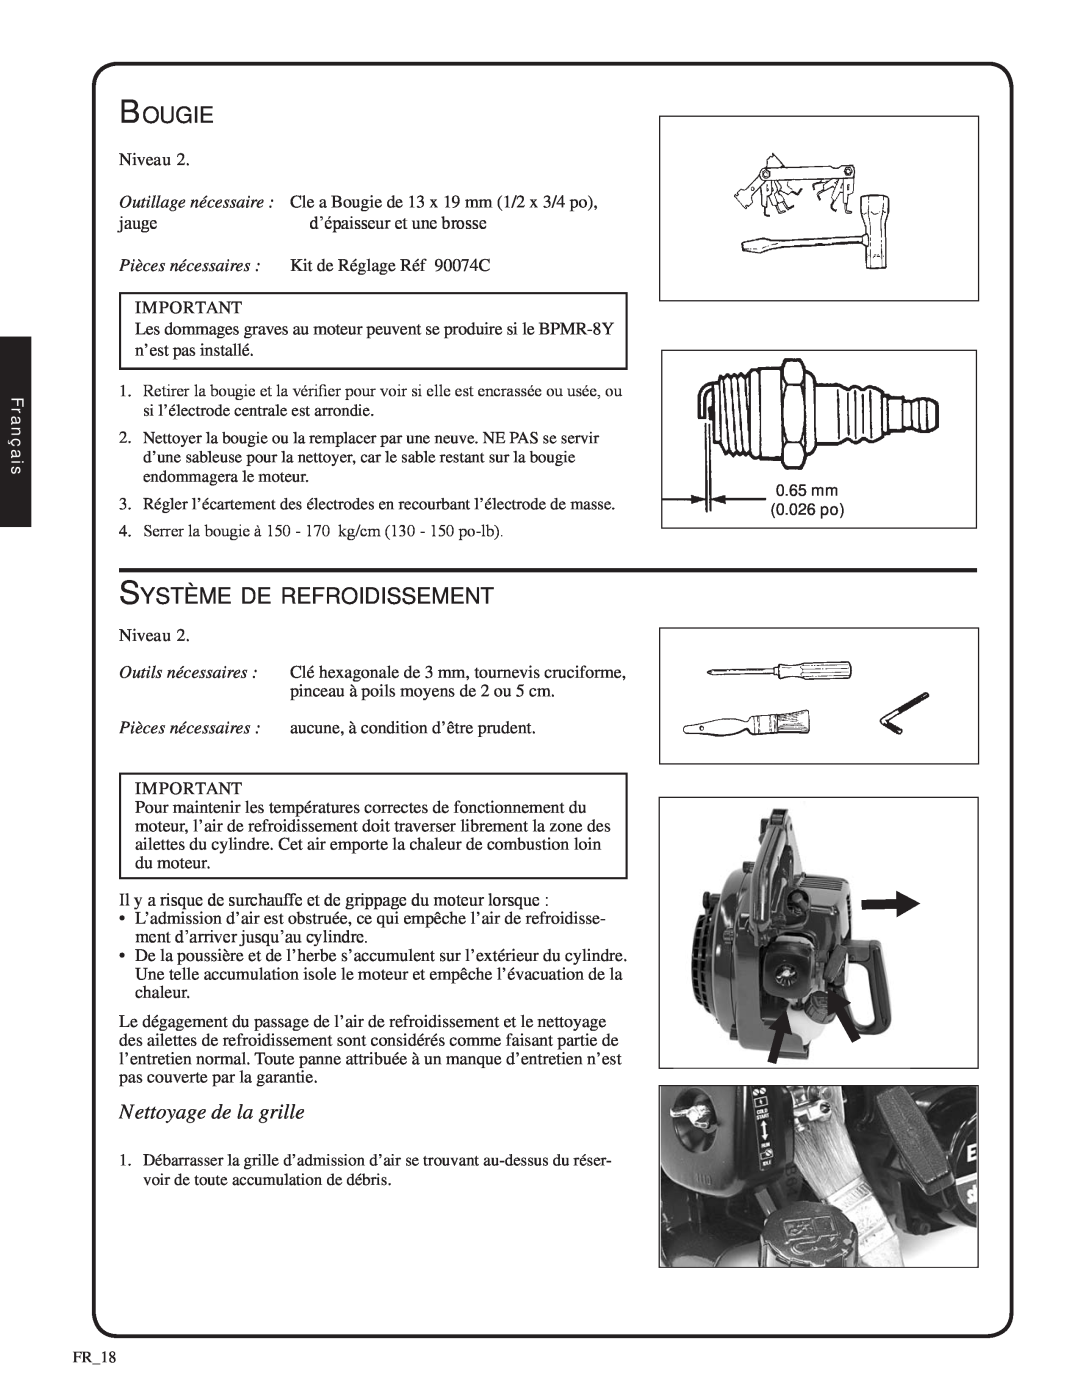 Shindaiwa SV212, 82052 manual Bougie, Système de refroidissement, Nettoyage de la grille, Pièces nécessaires, Français 